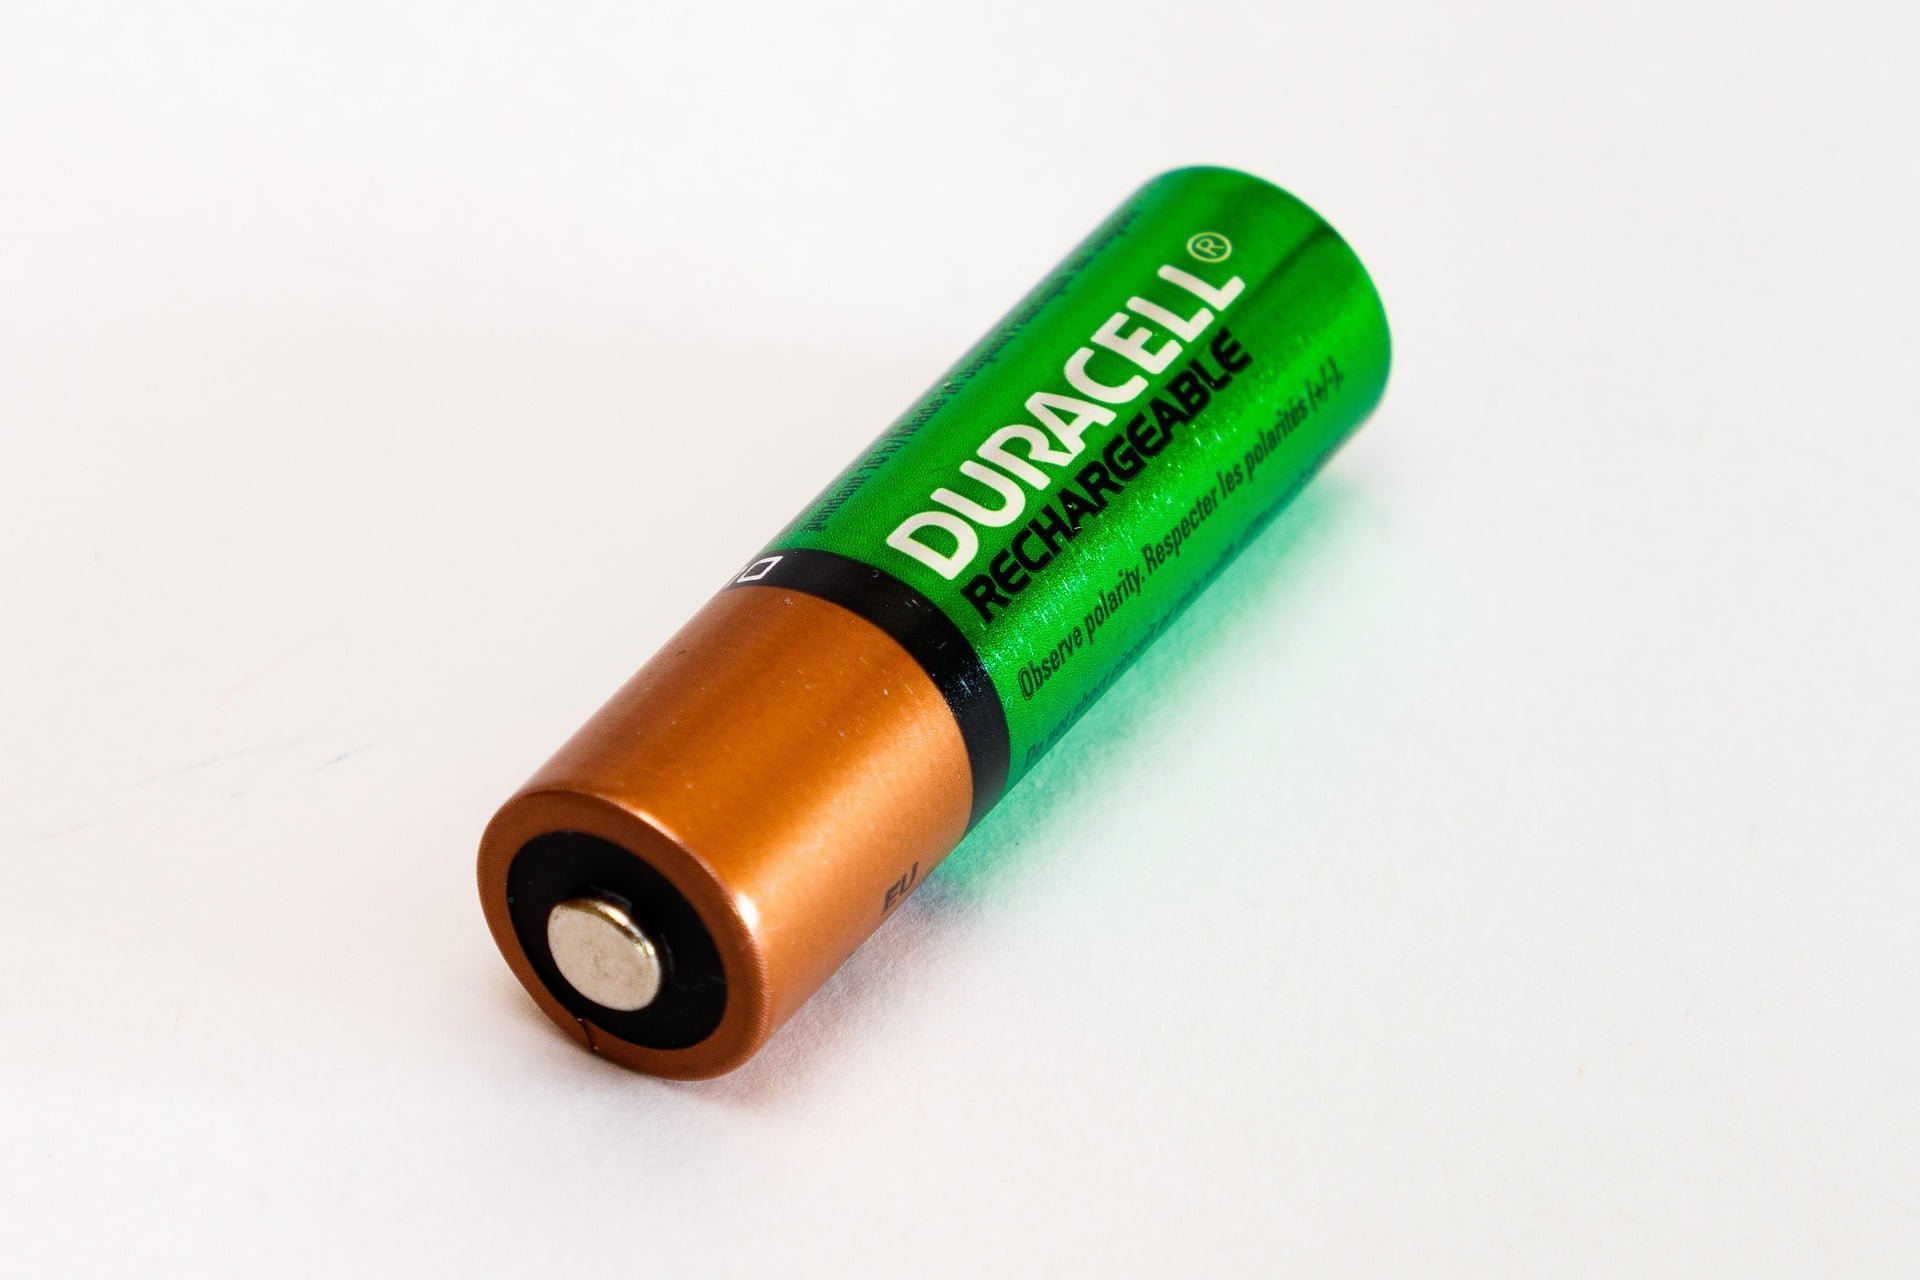 Kan det betale sig at bruge genopladelige batterier? MereMobil.dk